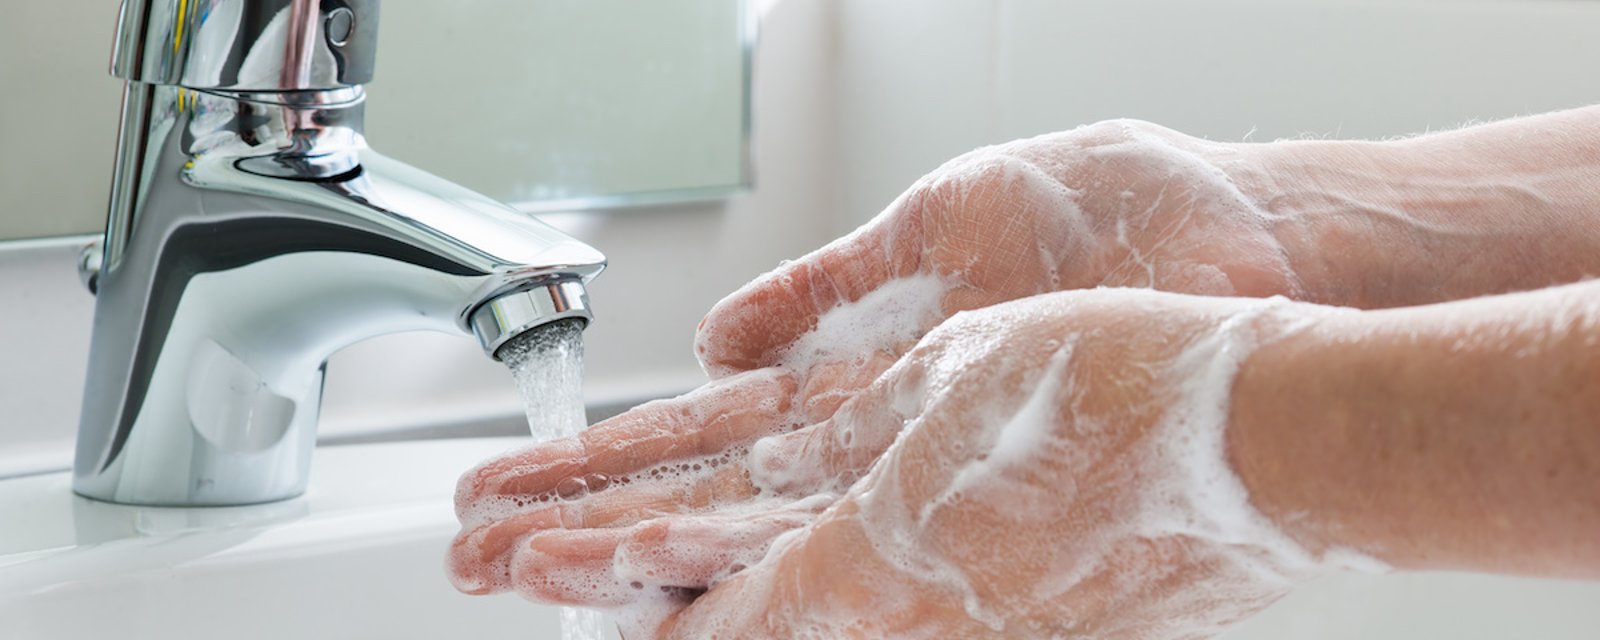 Ne pas se laver les mains après être allé à la toilette répand une super bactérie E. Coli